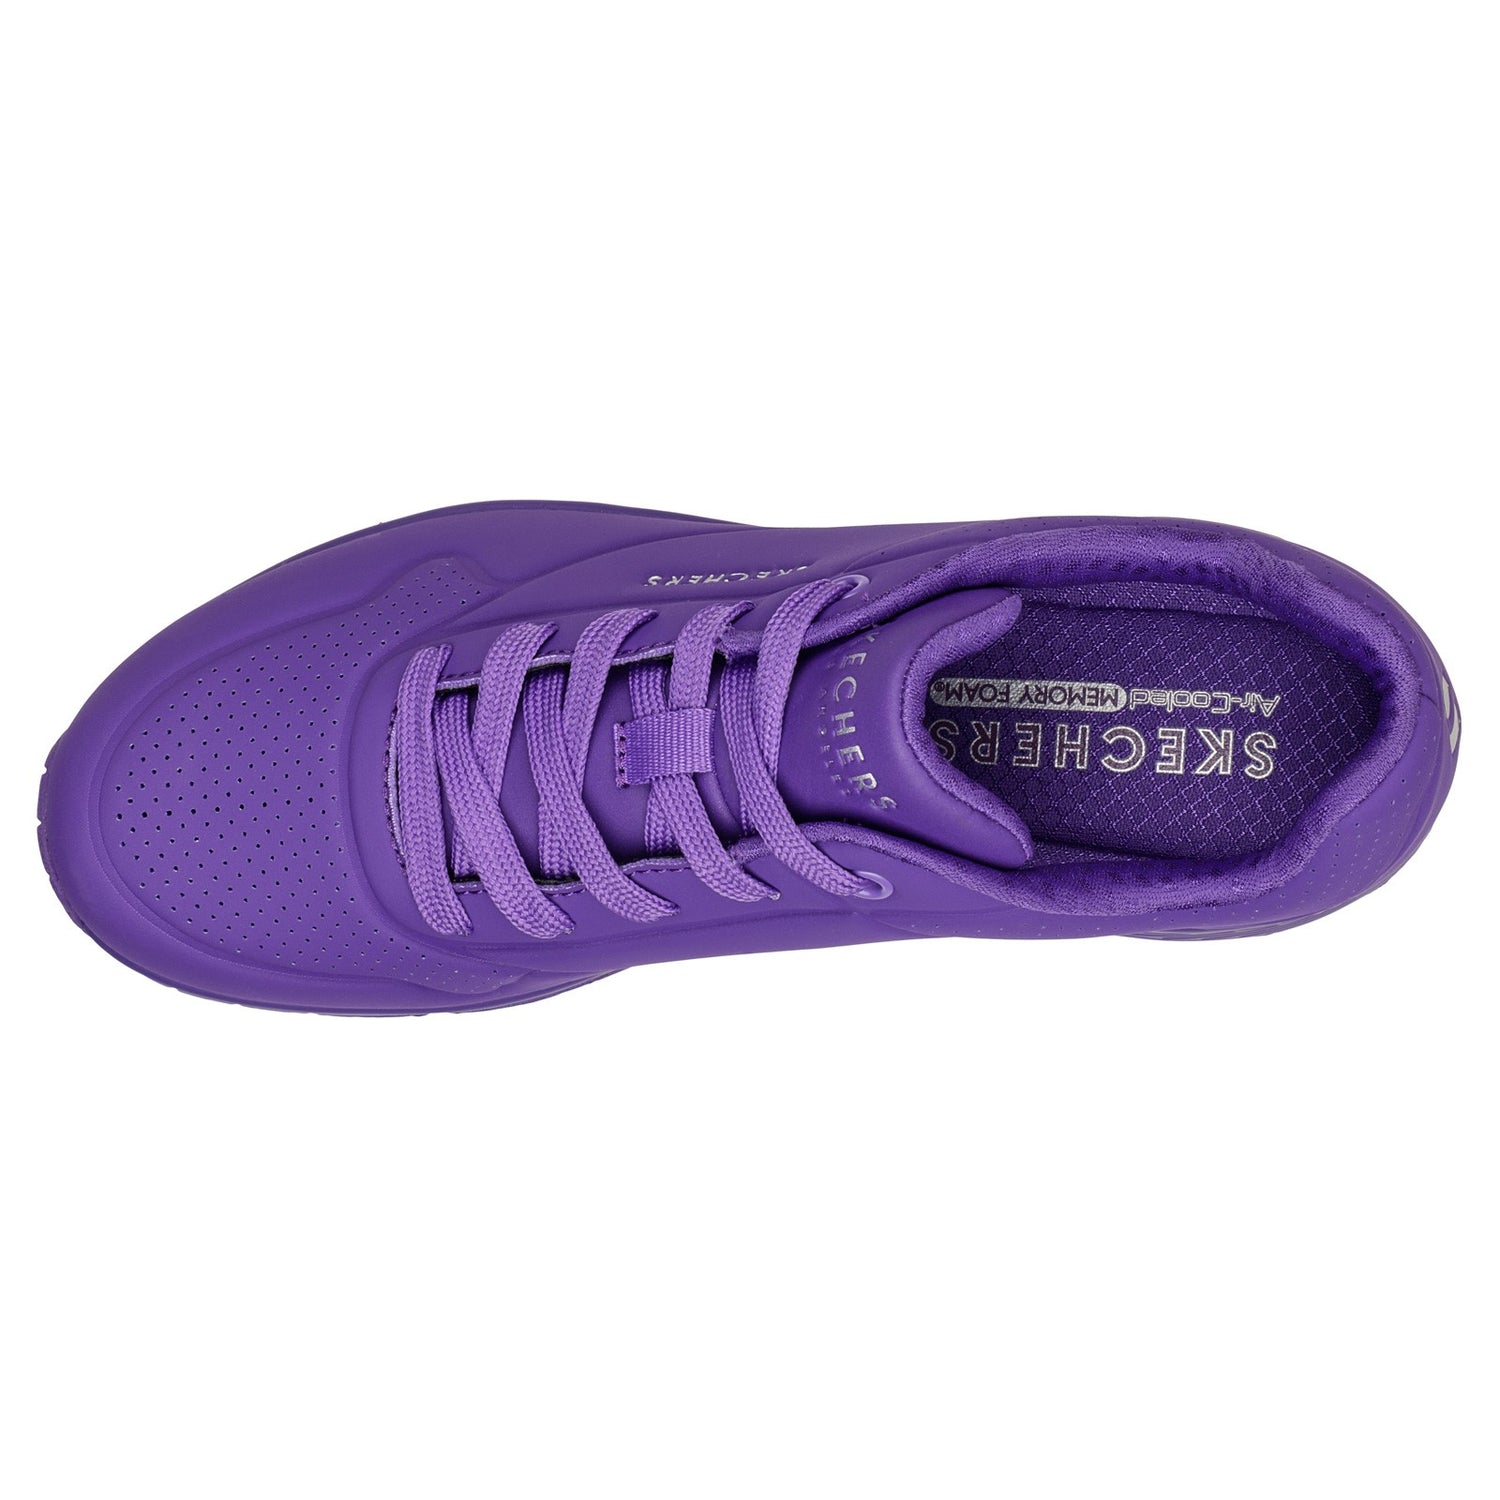 Peltz Shoes  Women's Skechers Street Uno - Neon Nights Sneaker Purple 73667-PUR